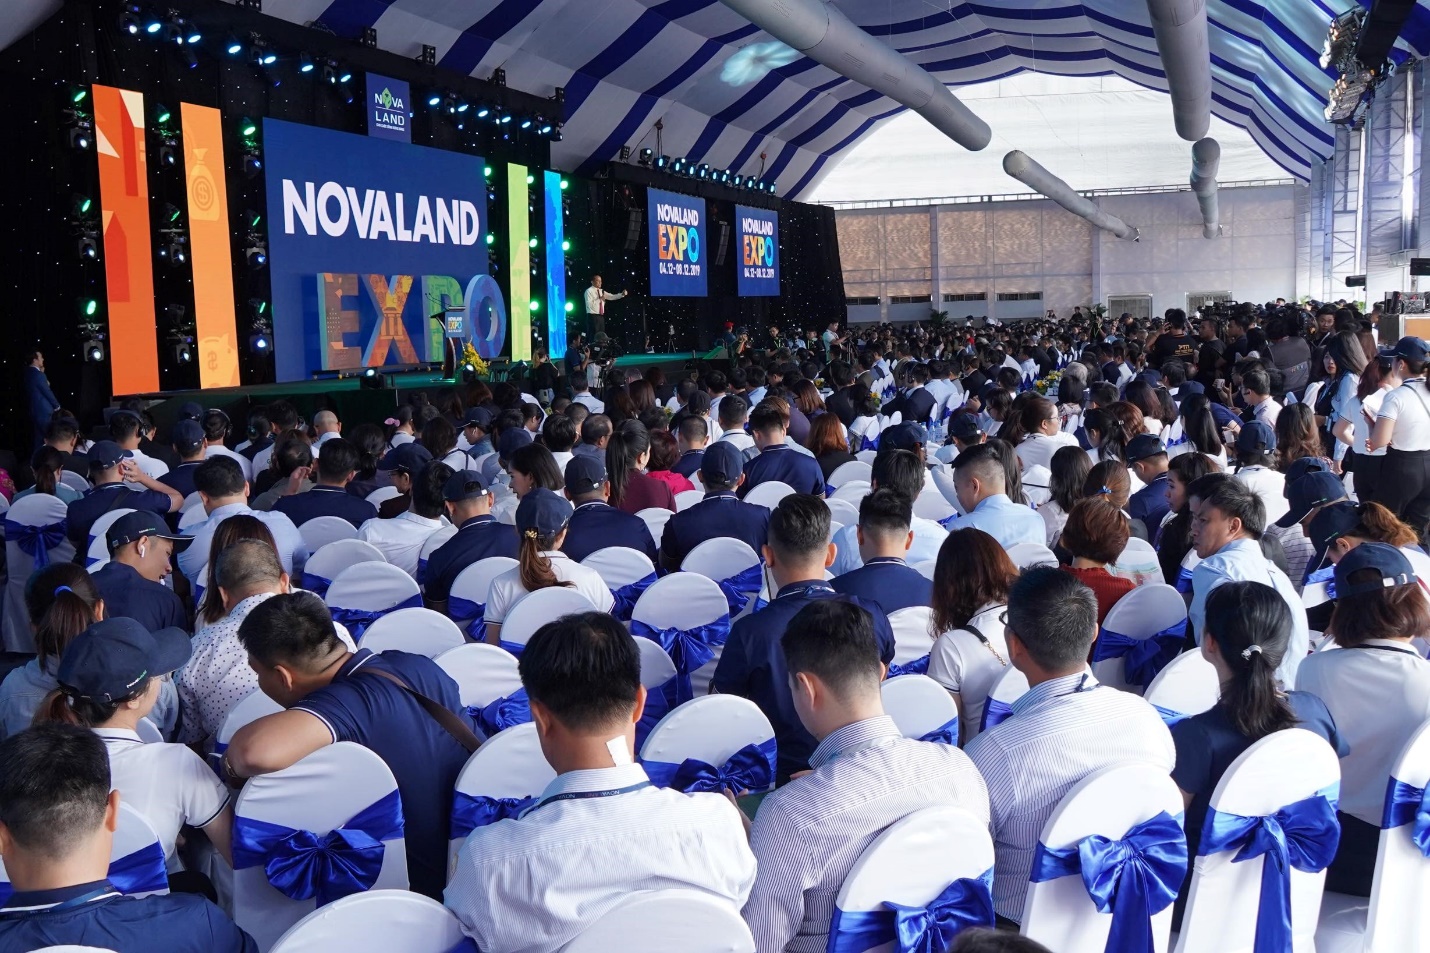 Triến lãm Novaland Expo diễn ra từ ngày 4-8/12 giới thiệu dòng sản phẩm second home tại NovaWorld Phan Thiet (Phan Thiết – Bình Thuận) với nhiều ưu đãi hấp dẫn